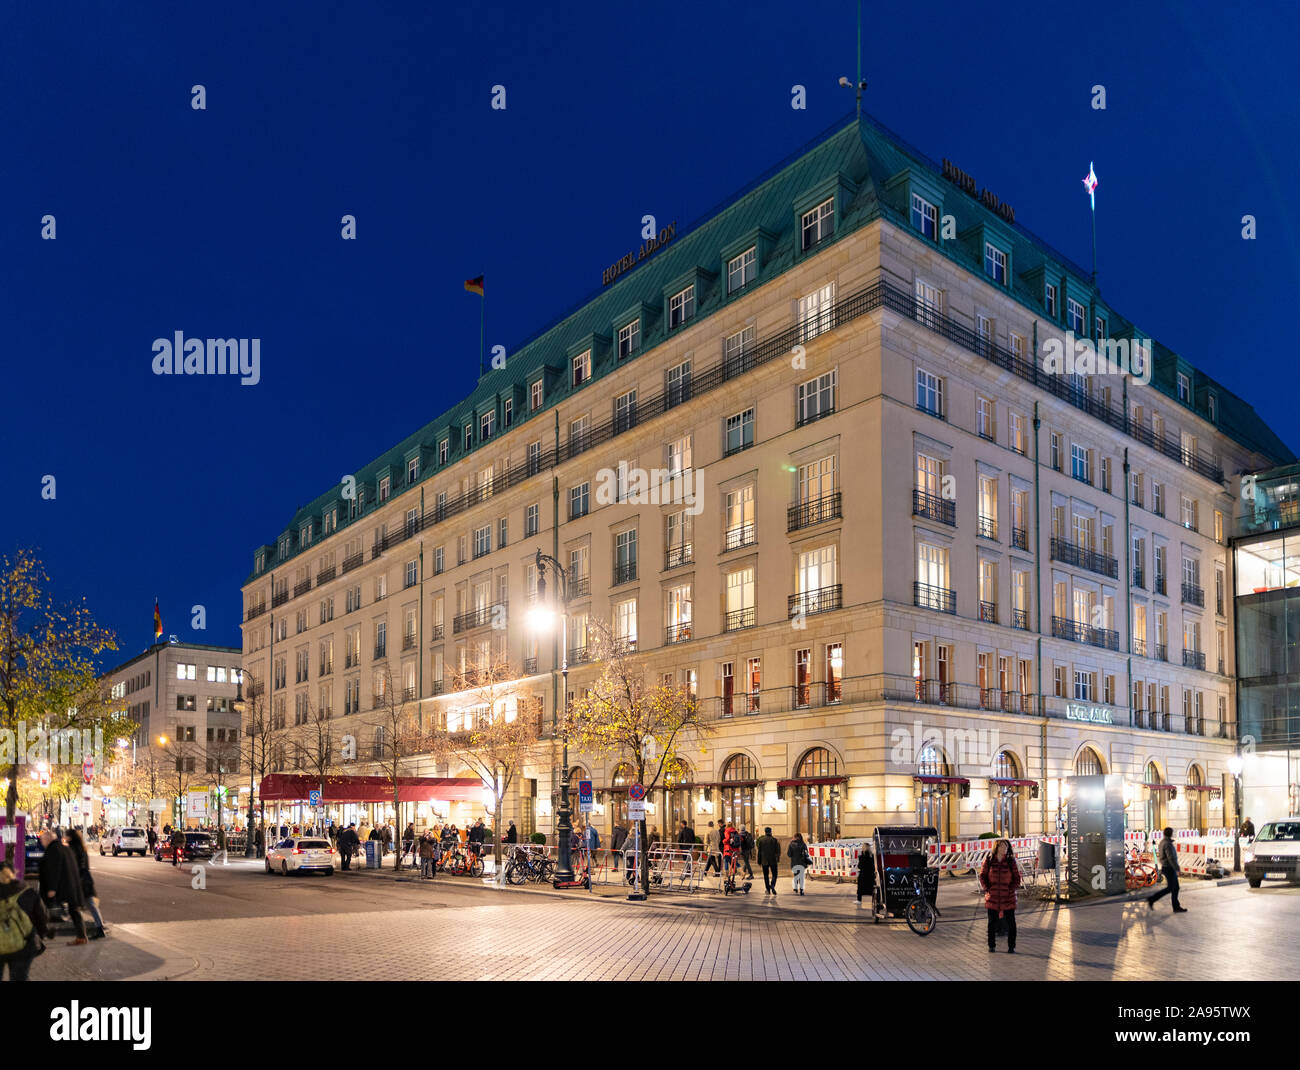 Bei Nacht Hotel Adlon am Pariser Platz in Berlin, Deutschland Stockfoto